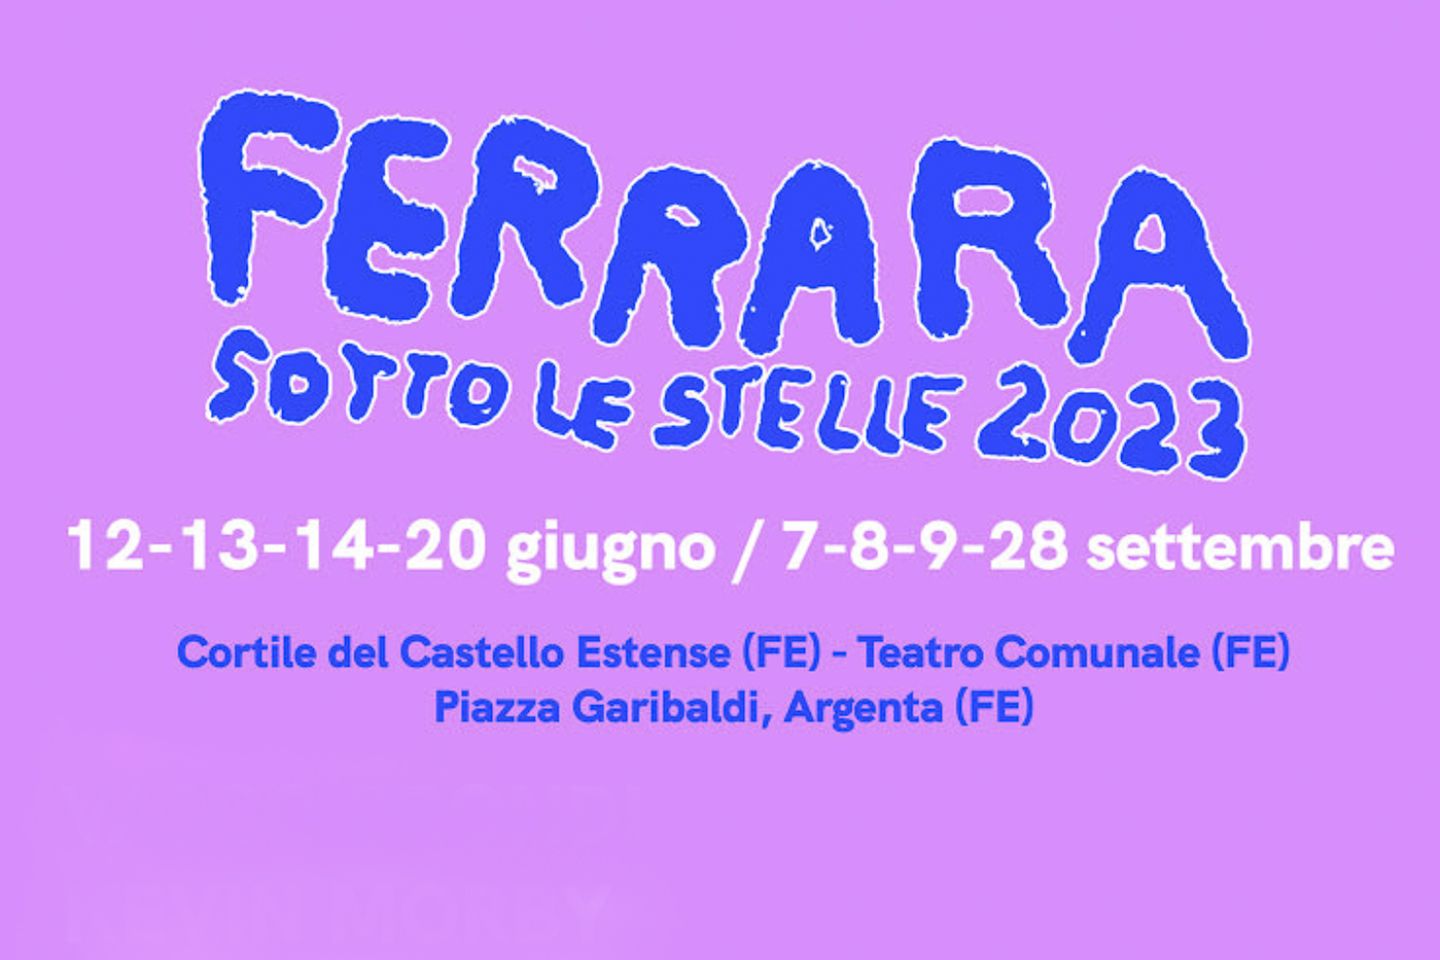 FERRARA SOTTO LE STELLE 2023 XXVII edizione